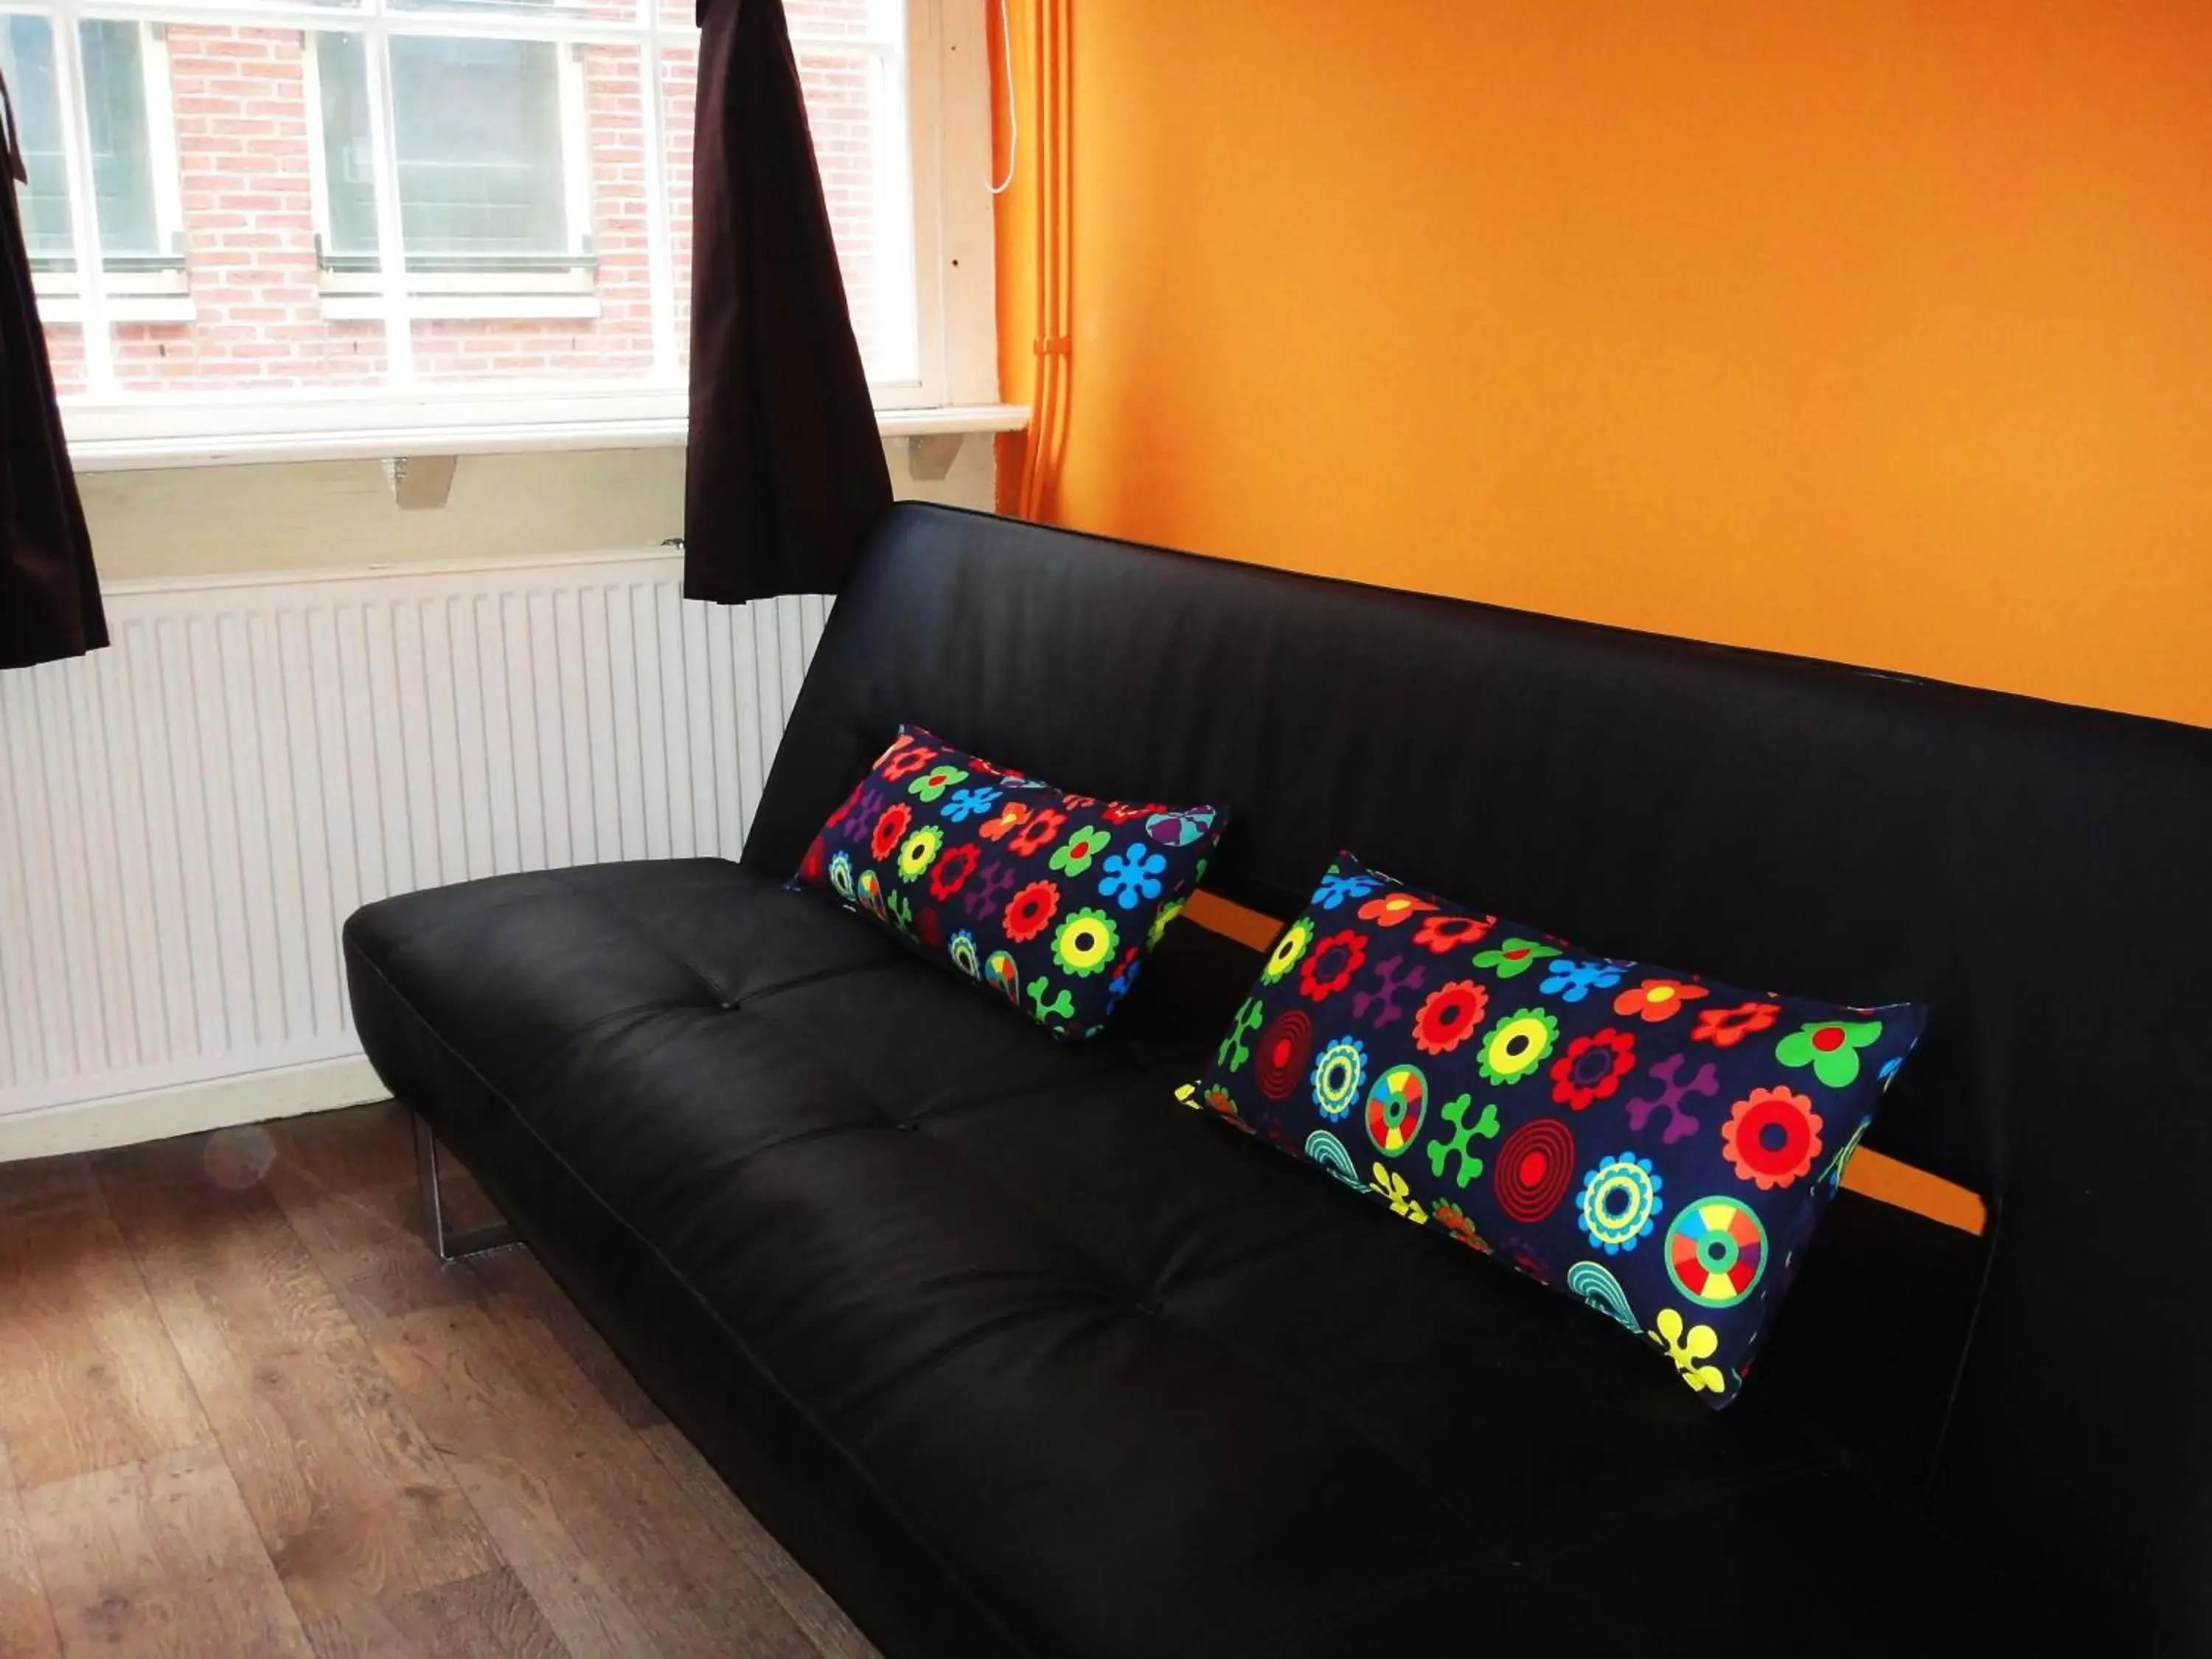 Bed, Seating Area in Orange Suite Studio